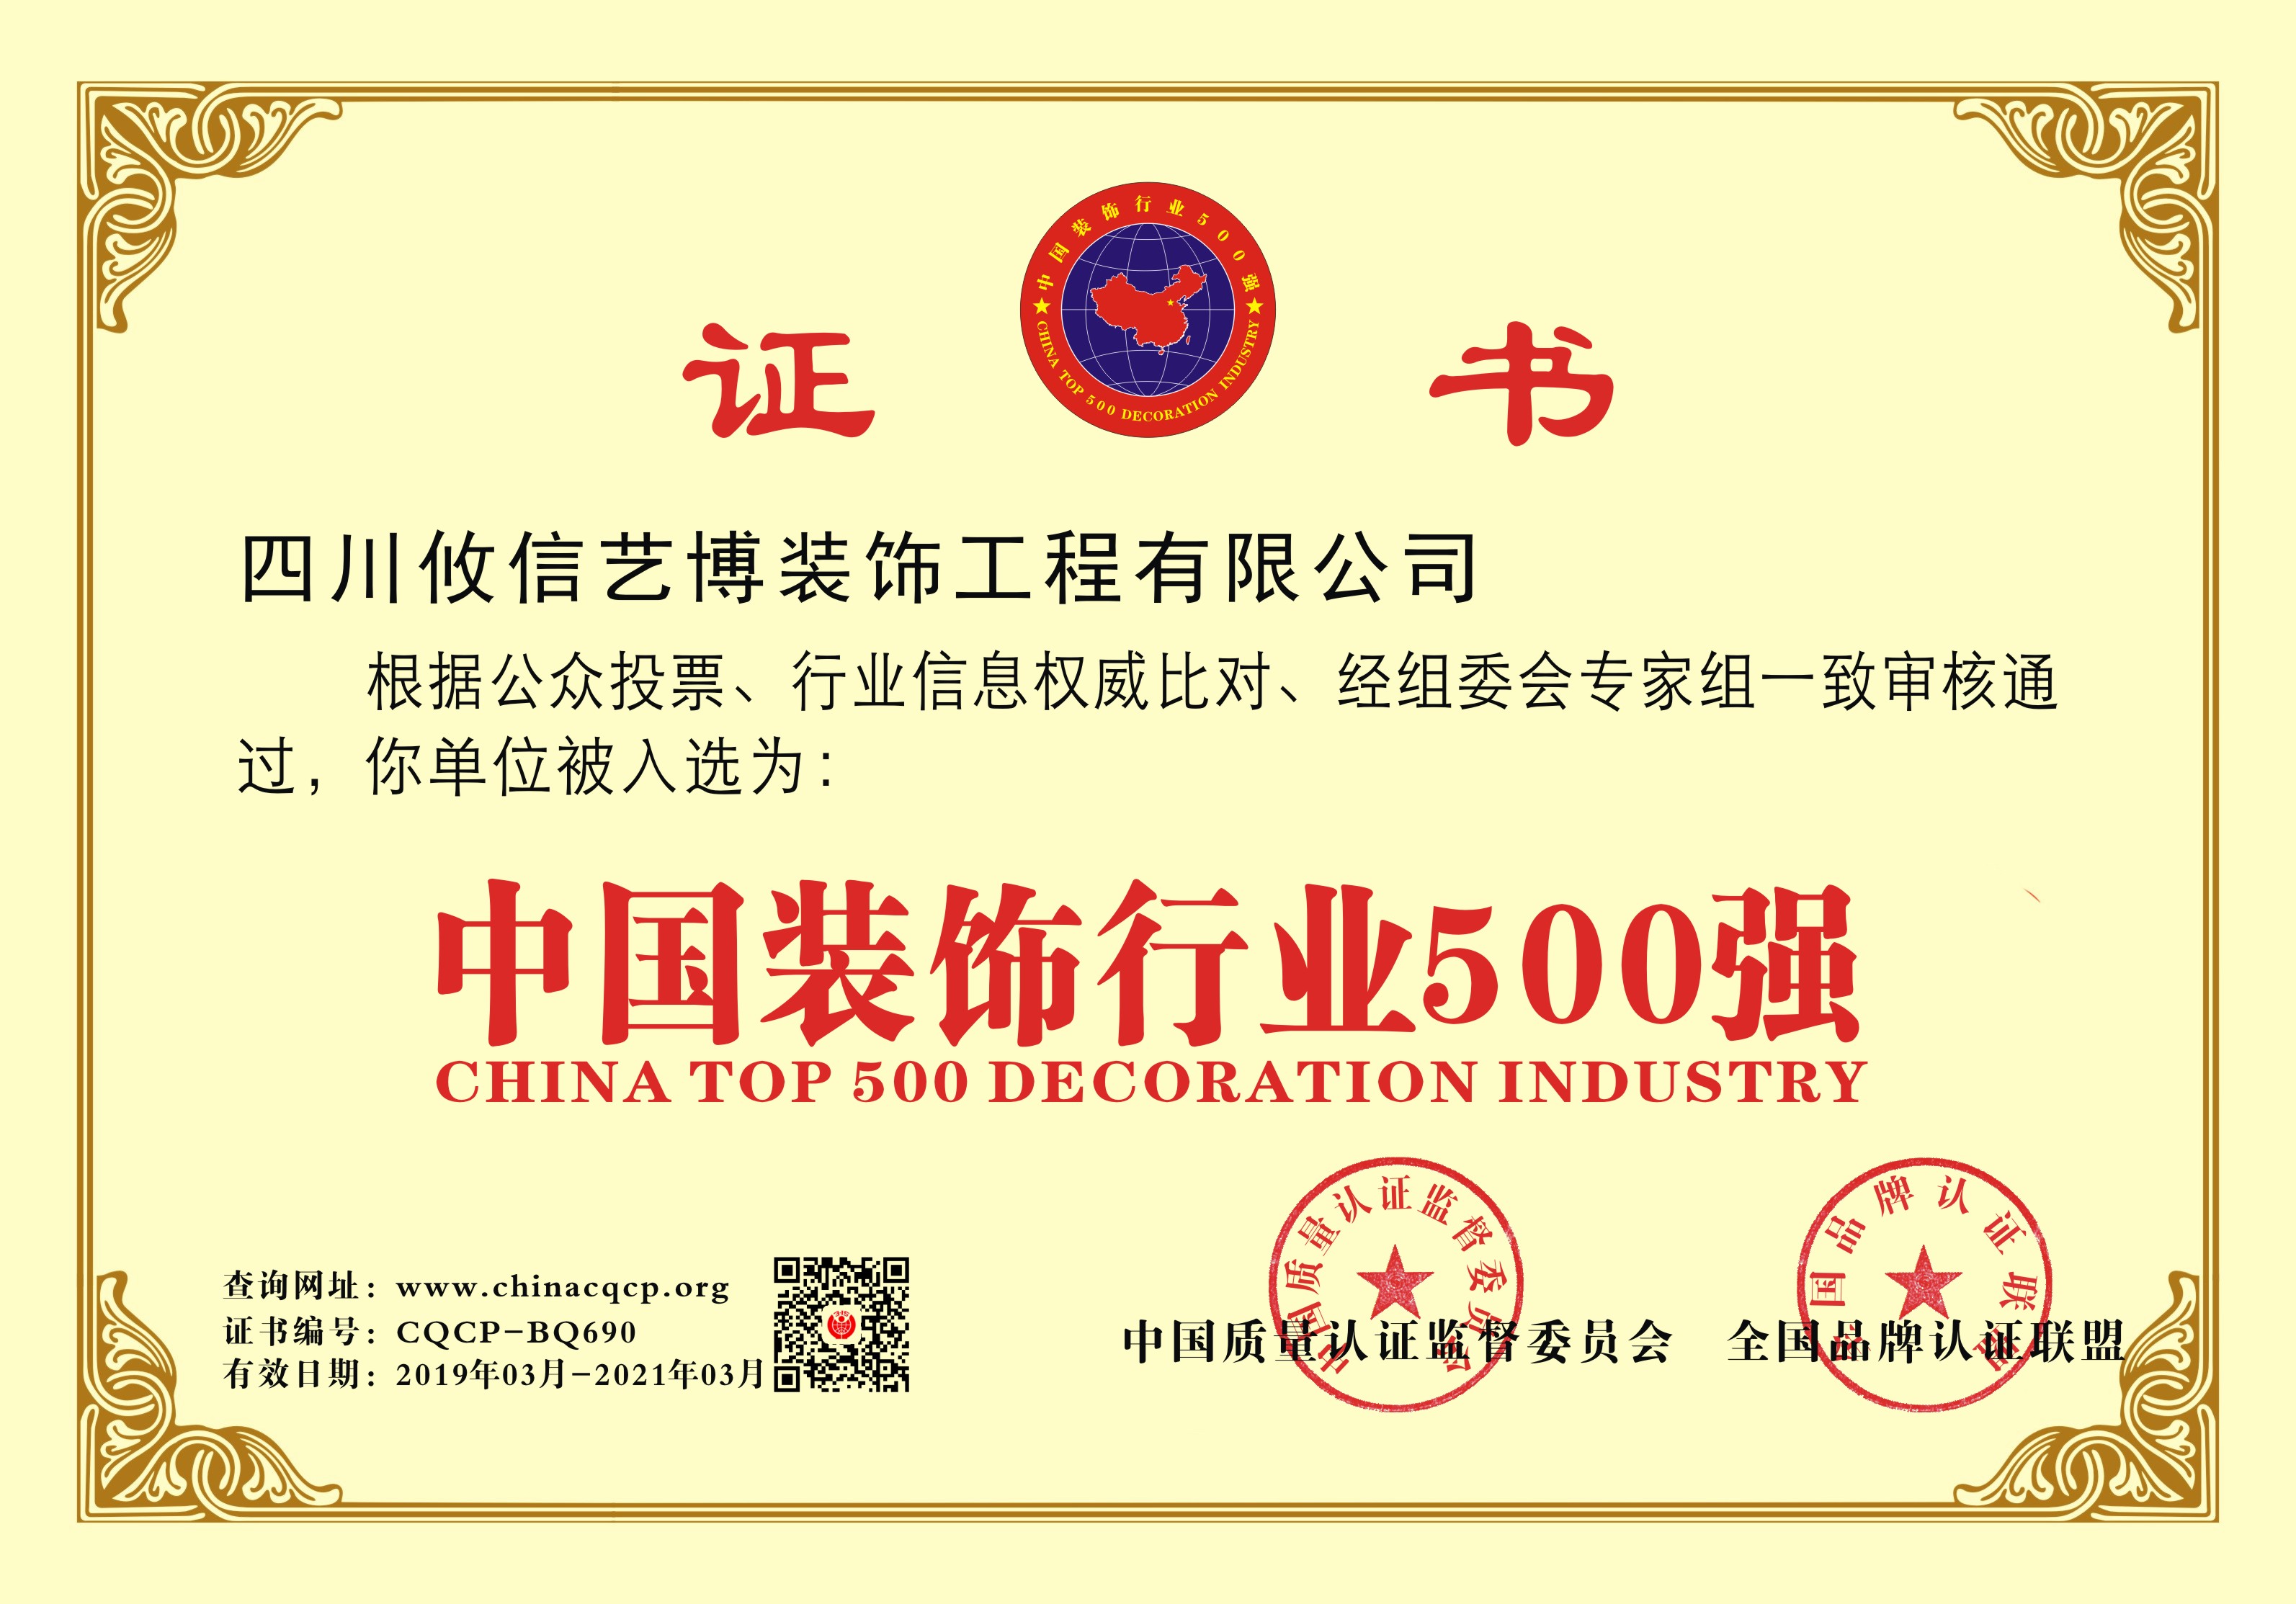 四川攸信丨合江名邸裝飾企業榮譽榮獲”中國裝飾行業500強“